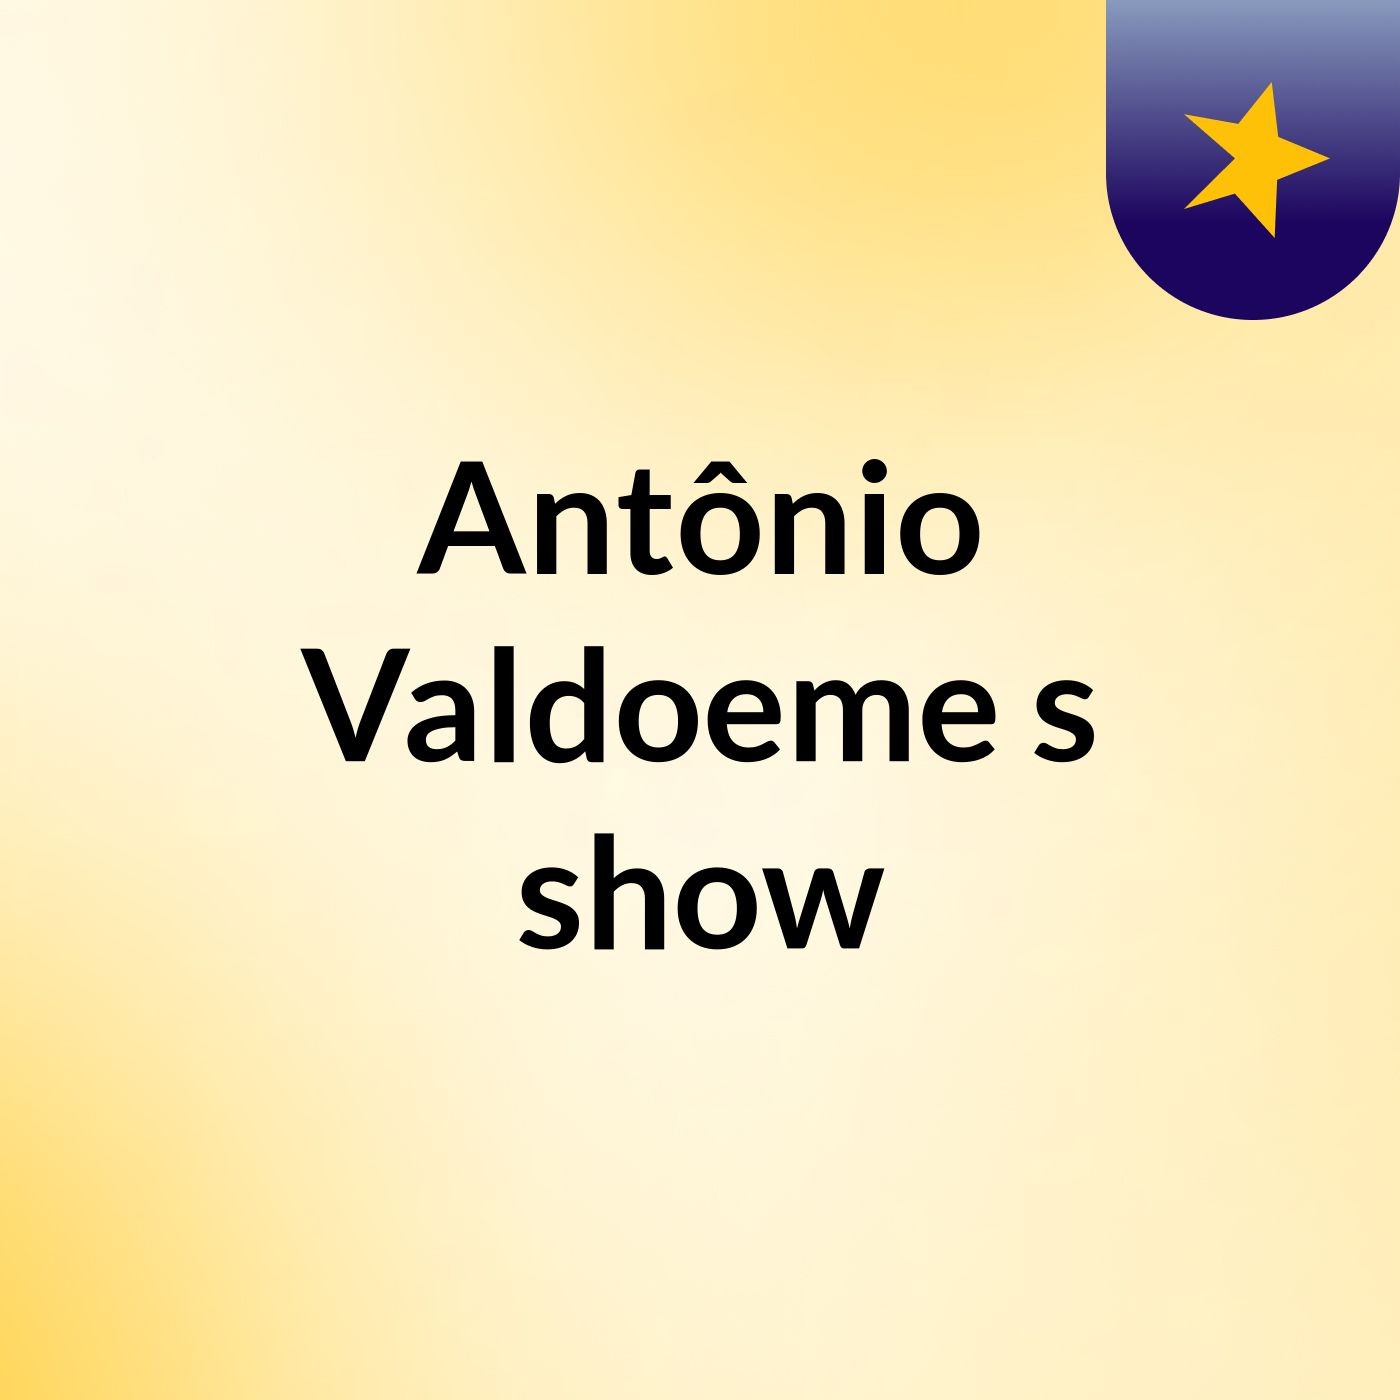 Antônio Valdoeme's show